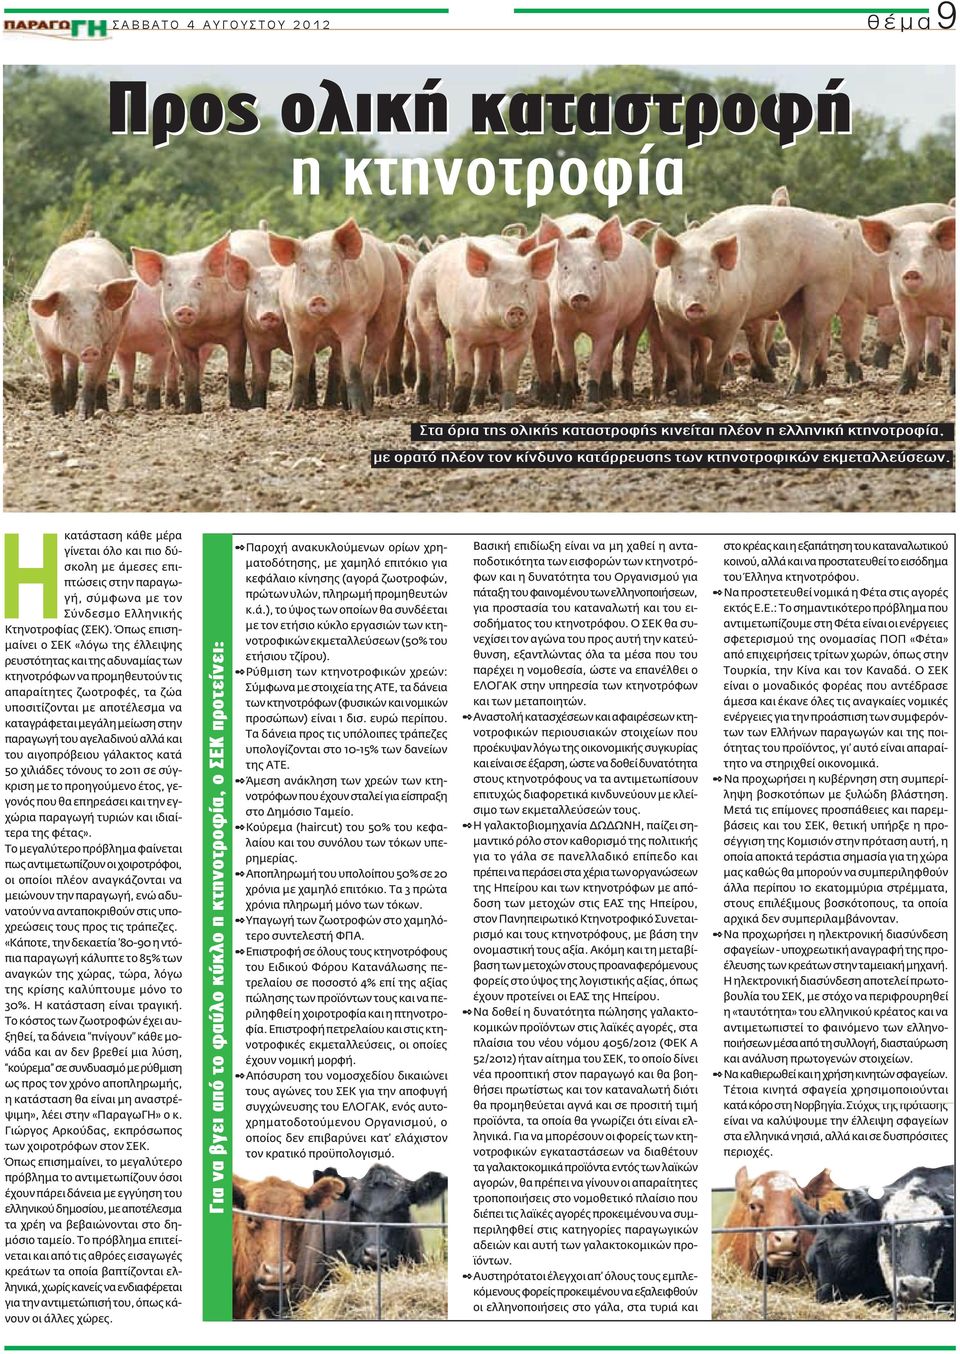 Όπως επισημαίνει ο ΣΕΚ «λόγω της έλλειψης ρευστότητας και της αδυναμίας των κτηνοτρόφων να προμηθευτούν τις απαραίτητες ζωοτροφές, τα ζώα υποσιτίζονται με αποτέλεσμα να καταγράφεται μεγάλη μείωση